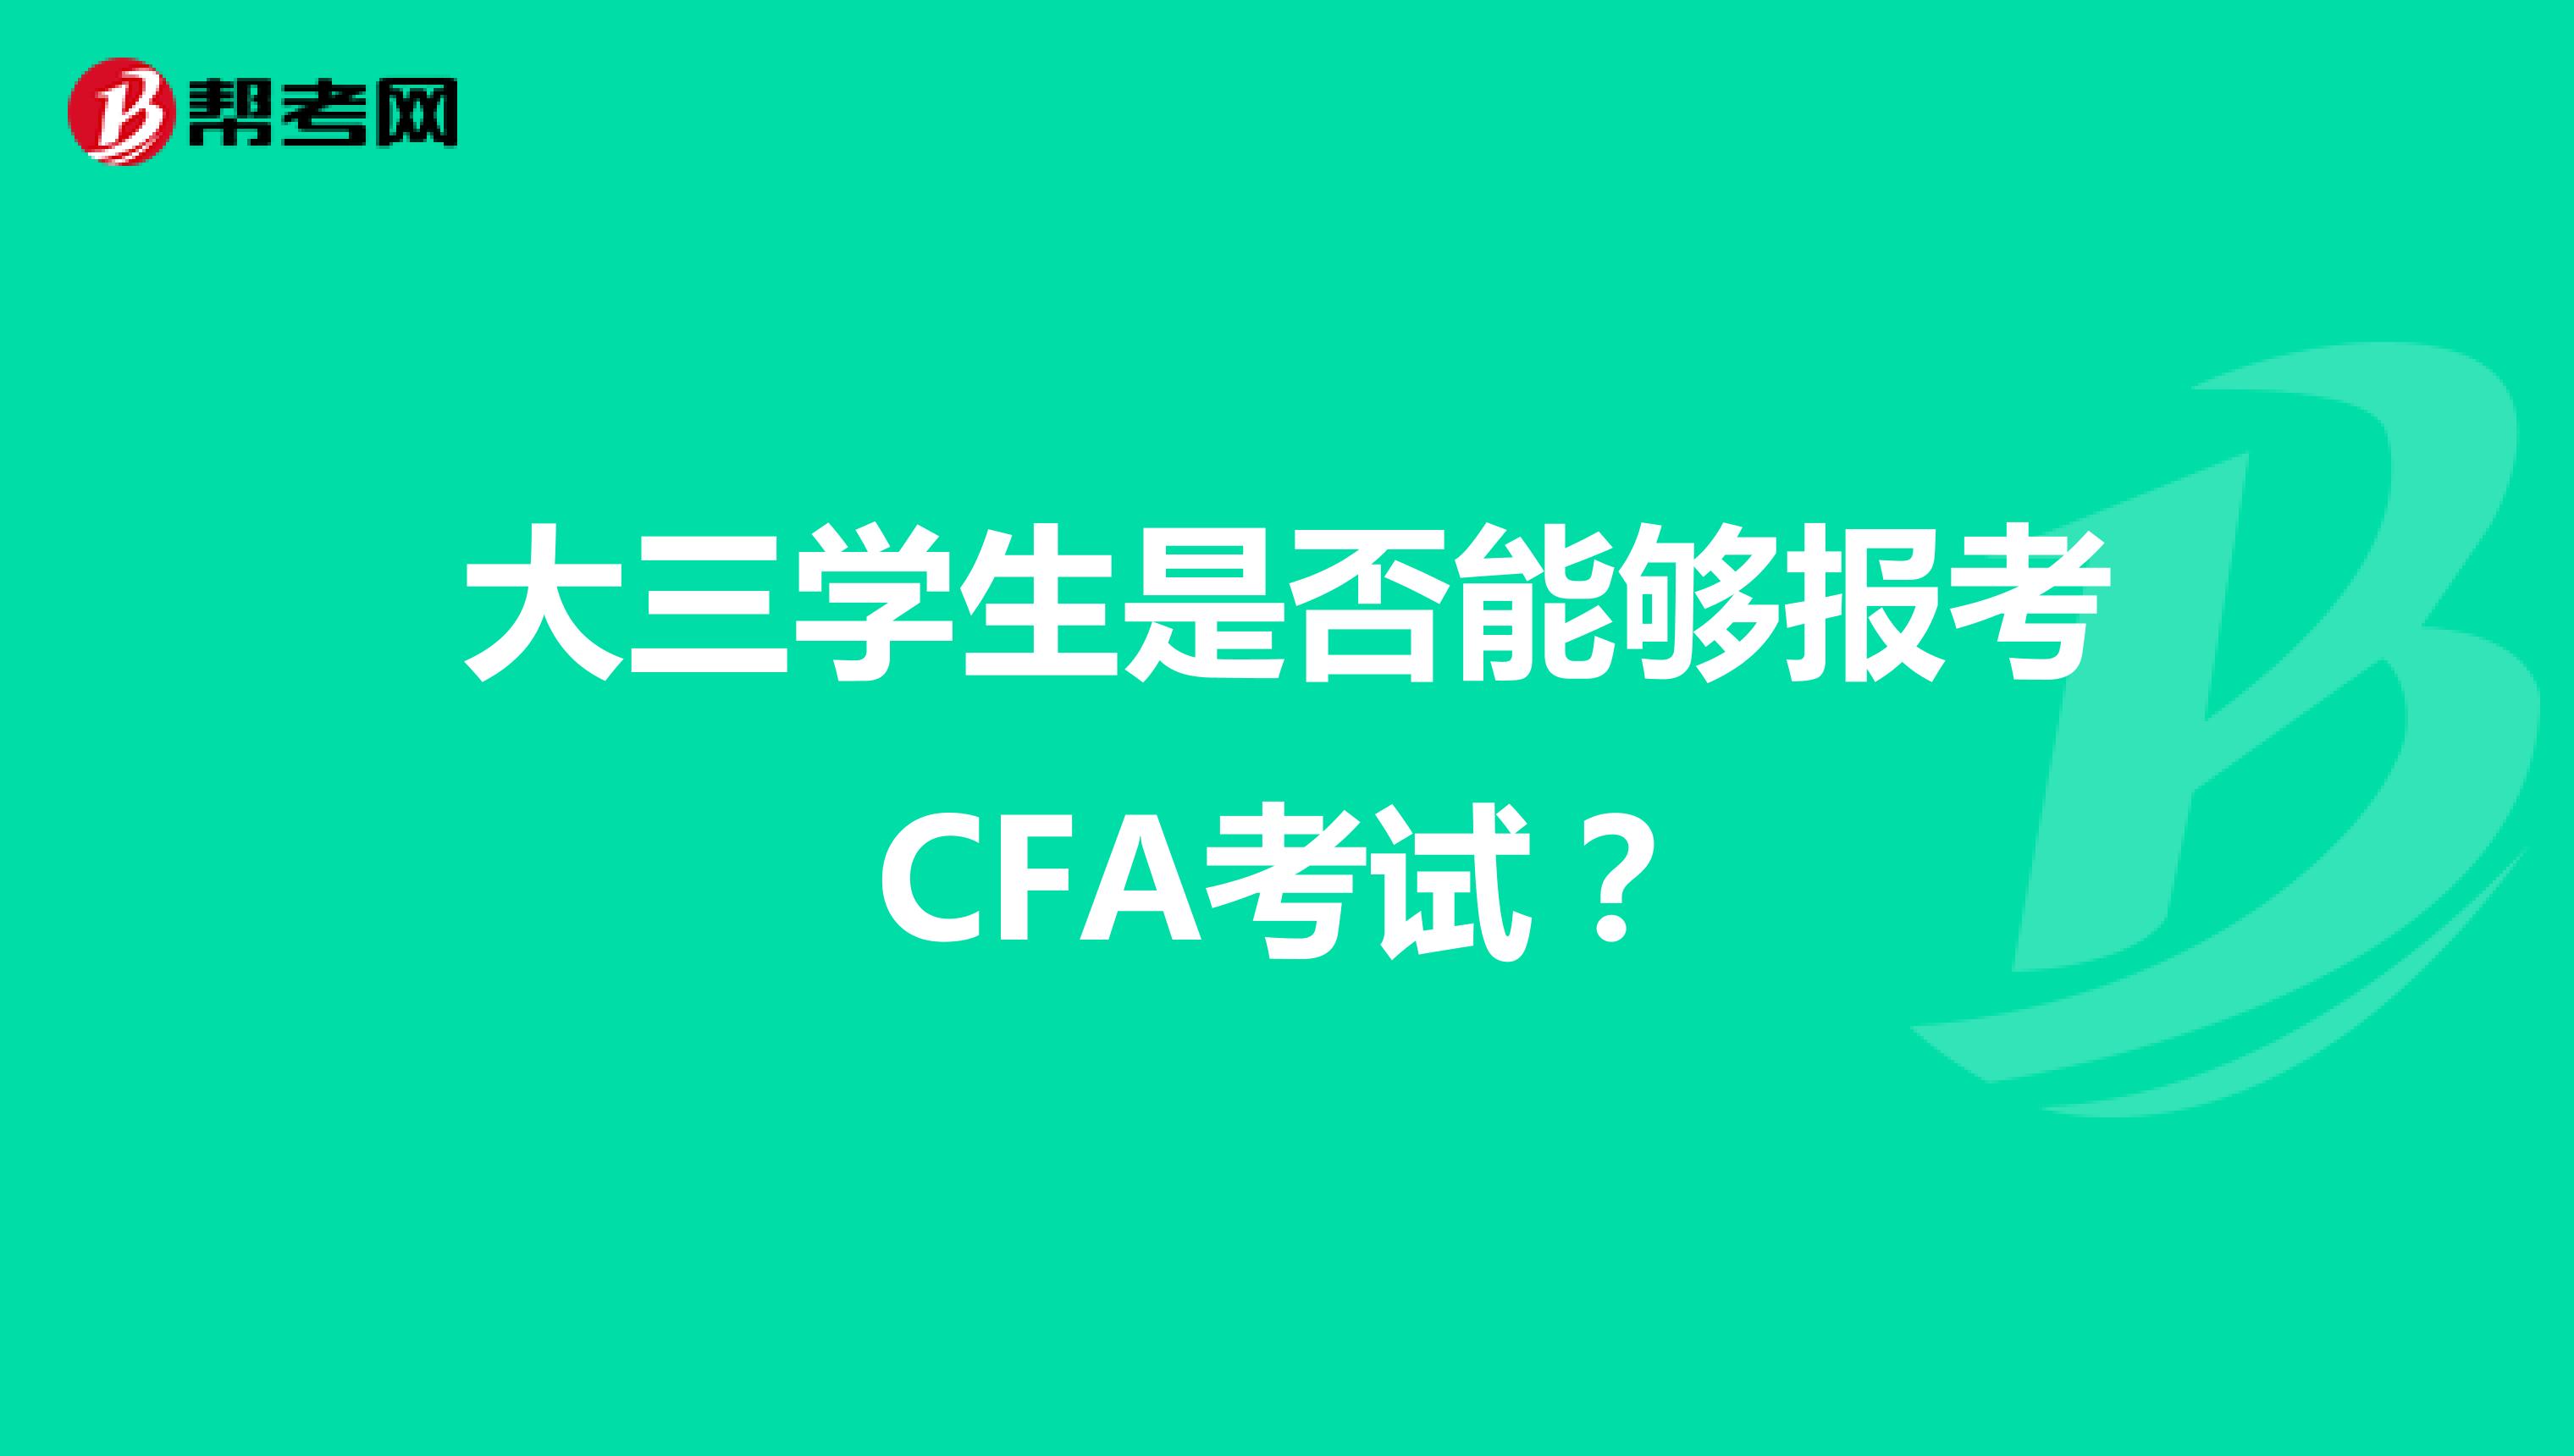 大三学生是否能够报考CFA考试？